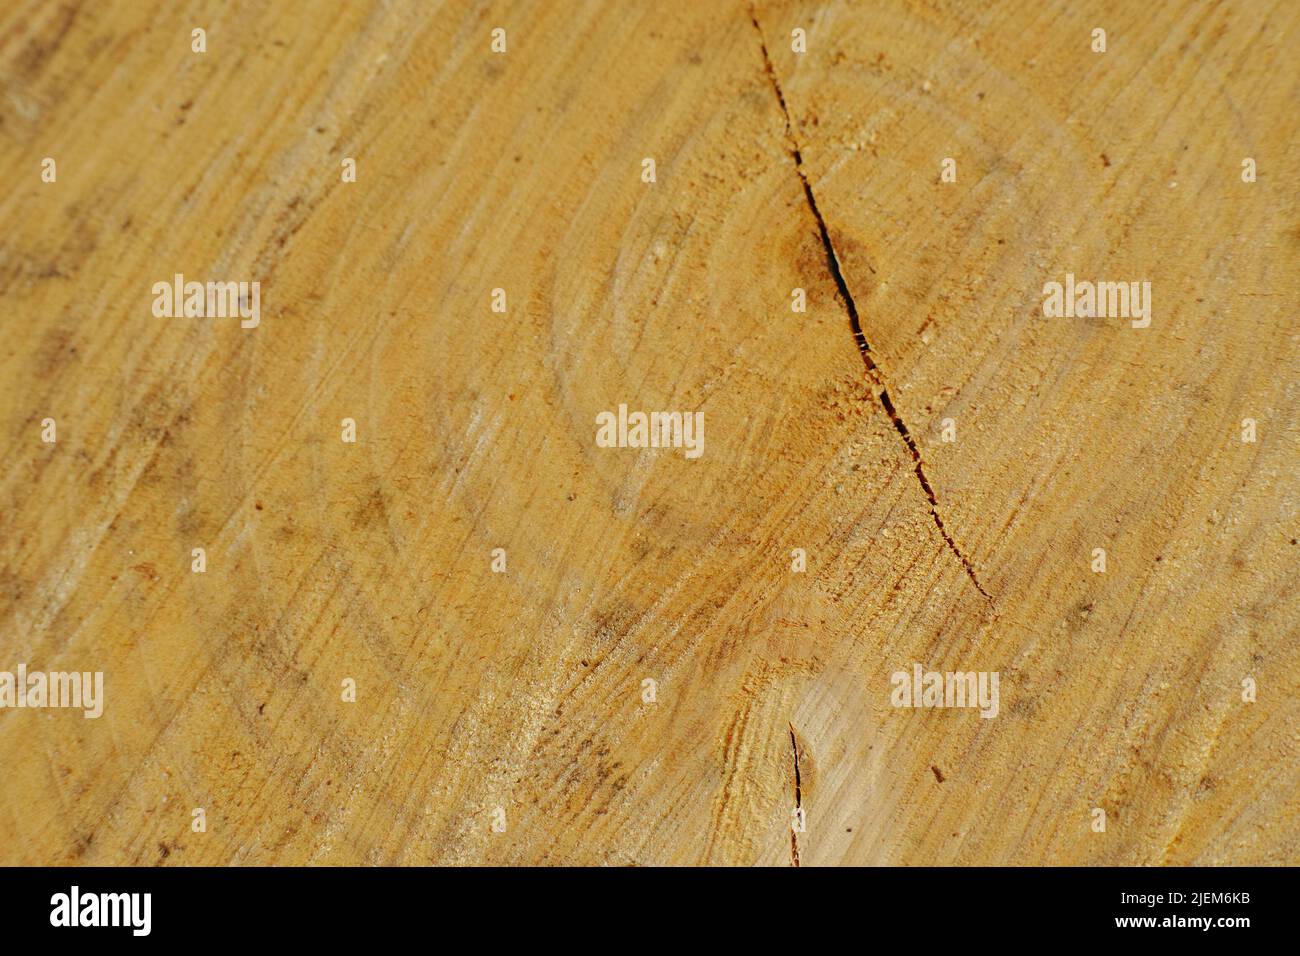 Texture du grain de bois de la souche de vieux arbre avec des fissures. Détail des textures rugueuses sur le tronc d'arbre utilisé. Matériau en bois avec marques de sculpture. Répétitions circulaires Banque D'Images